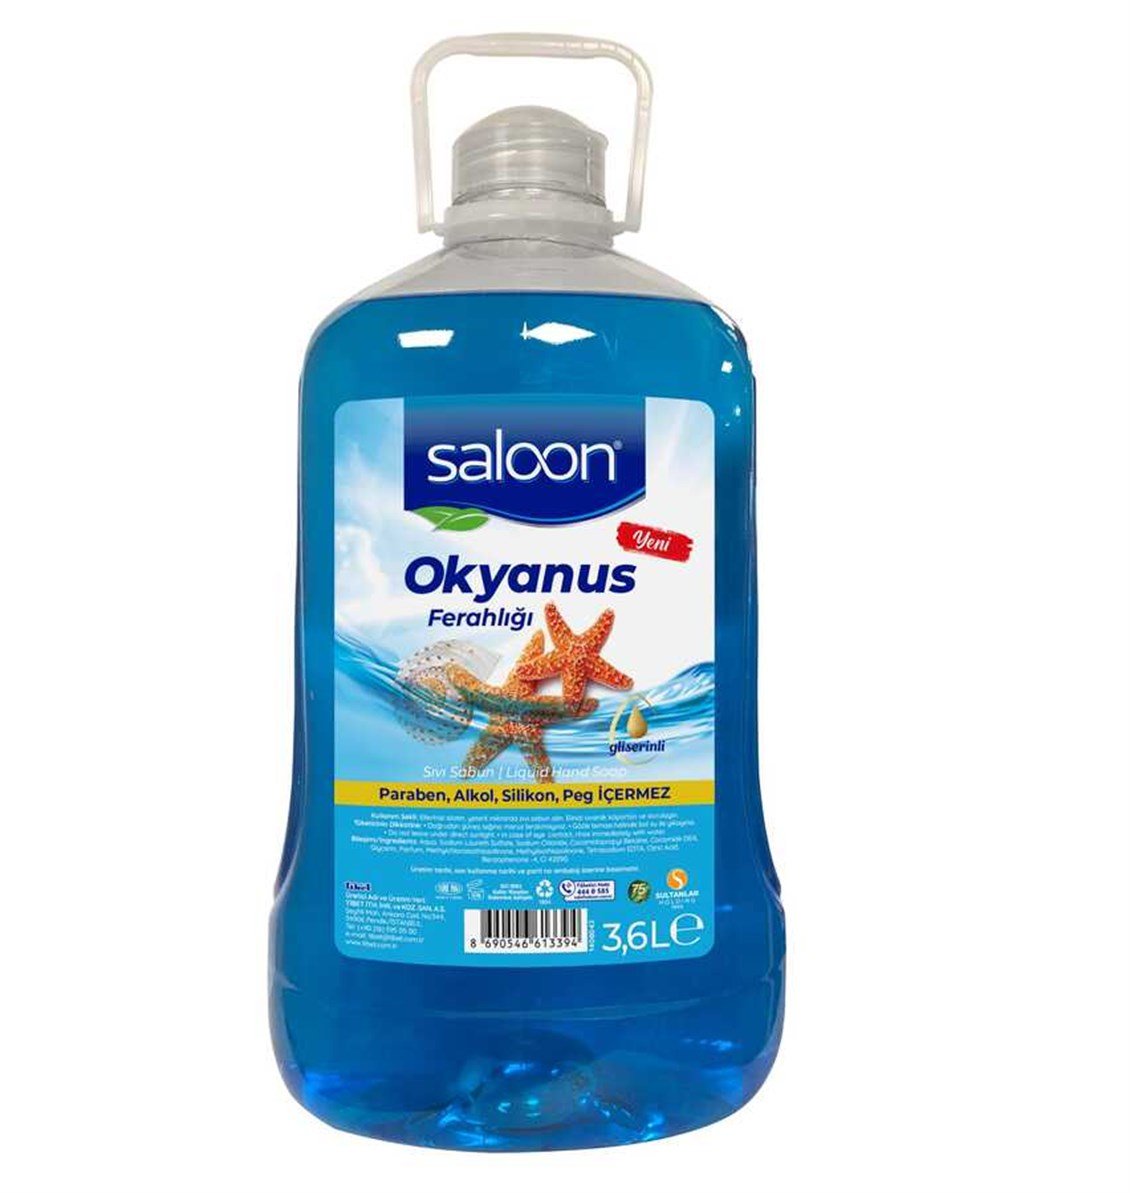 Saloon Sıvı Sabun Okyanus Ferahlığı 3,6 lt - Onur Market